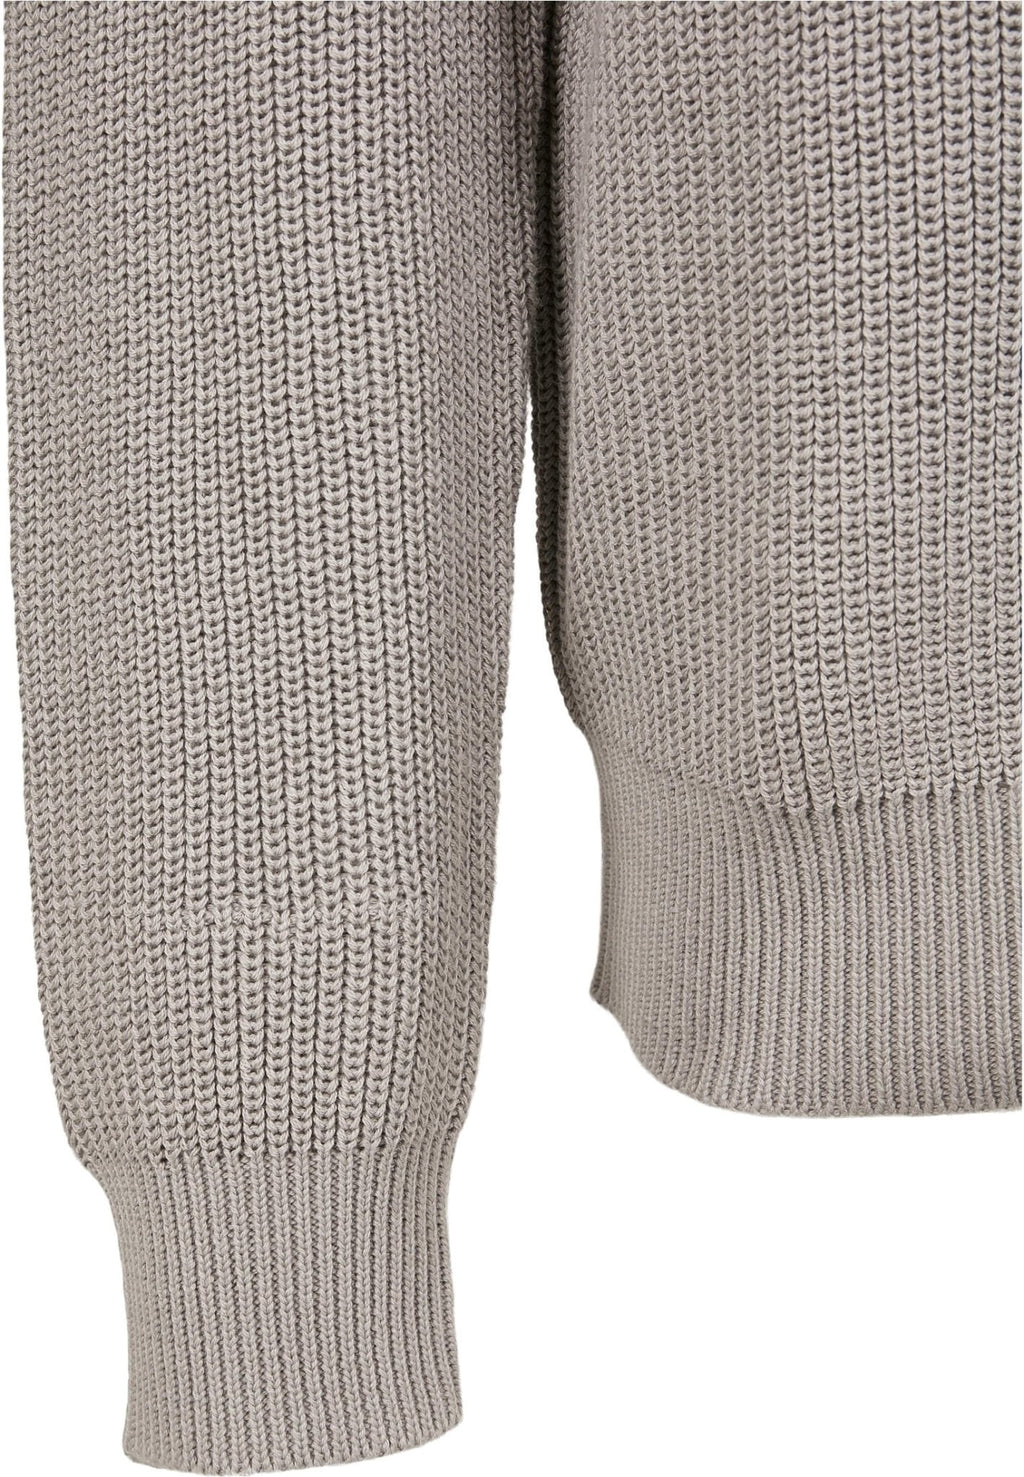 Cardigan Stitch Rollneck Jumper - Grey